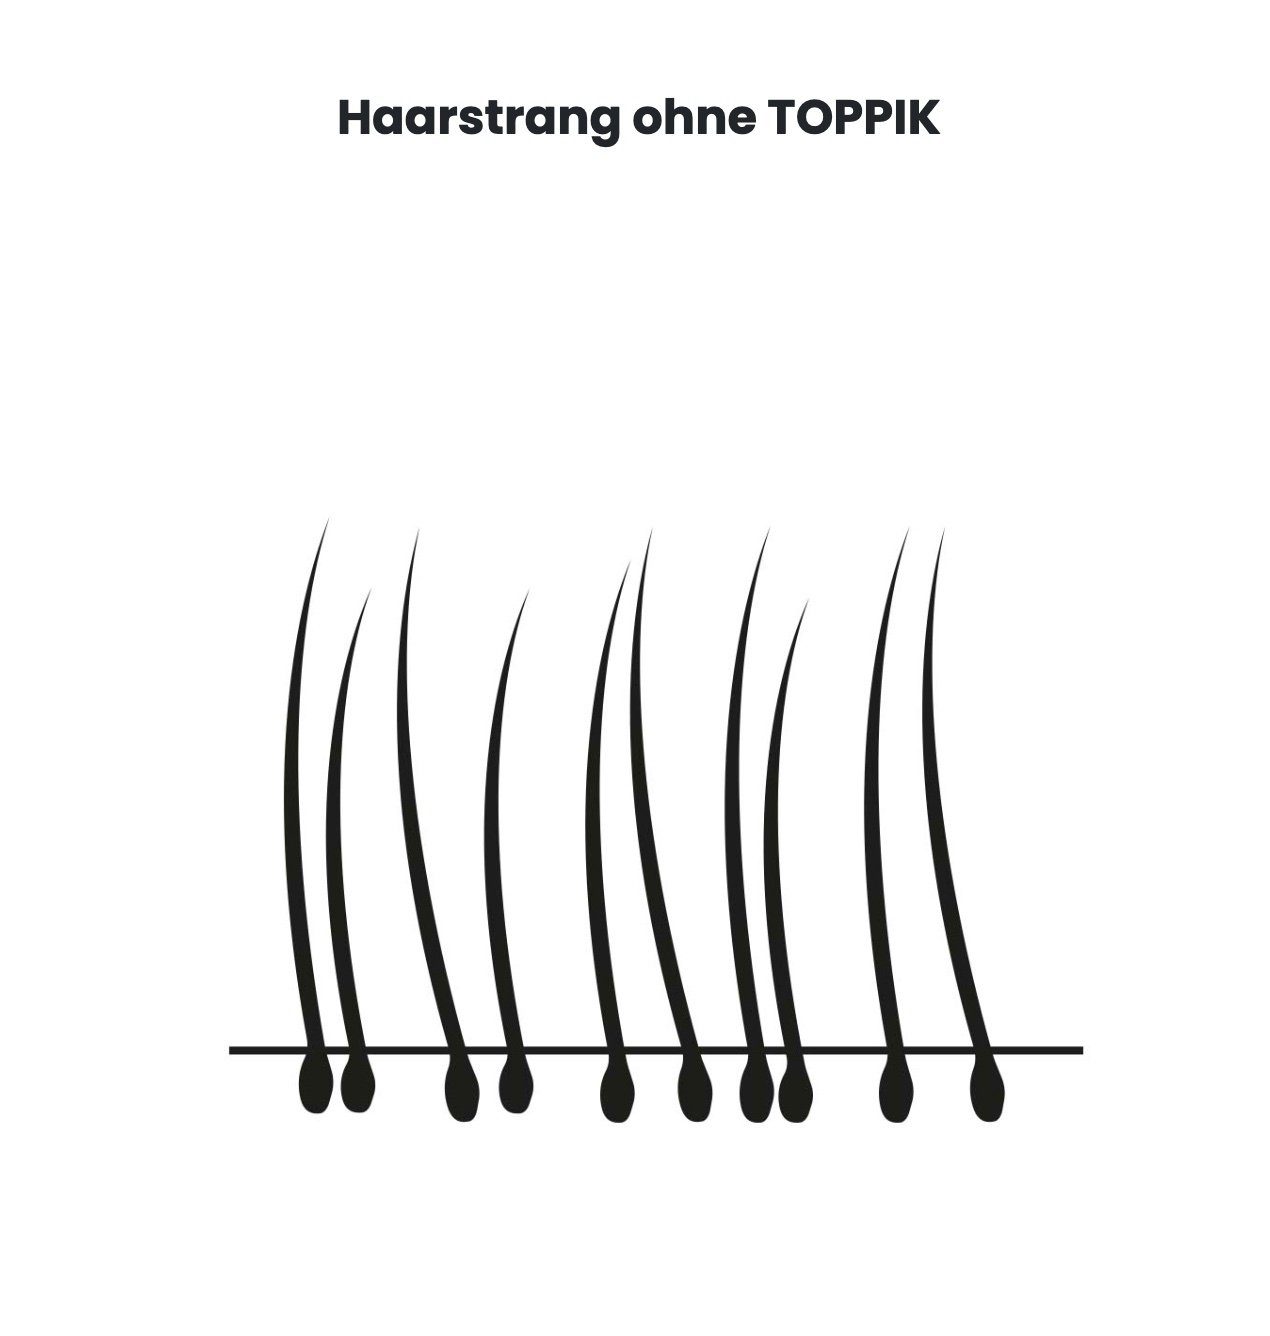 TOPPIK Haarstyling-Set TOPPIK 55 g. - Streuhaar, Haarverdichtung, Schütthaar, Haarfasern, Puder, Hair Fibers Mittelblond